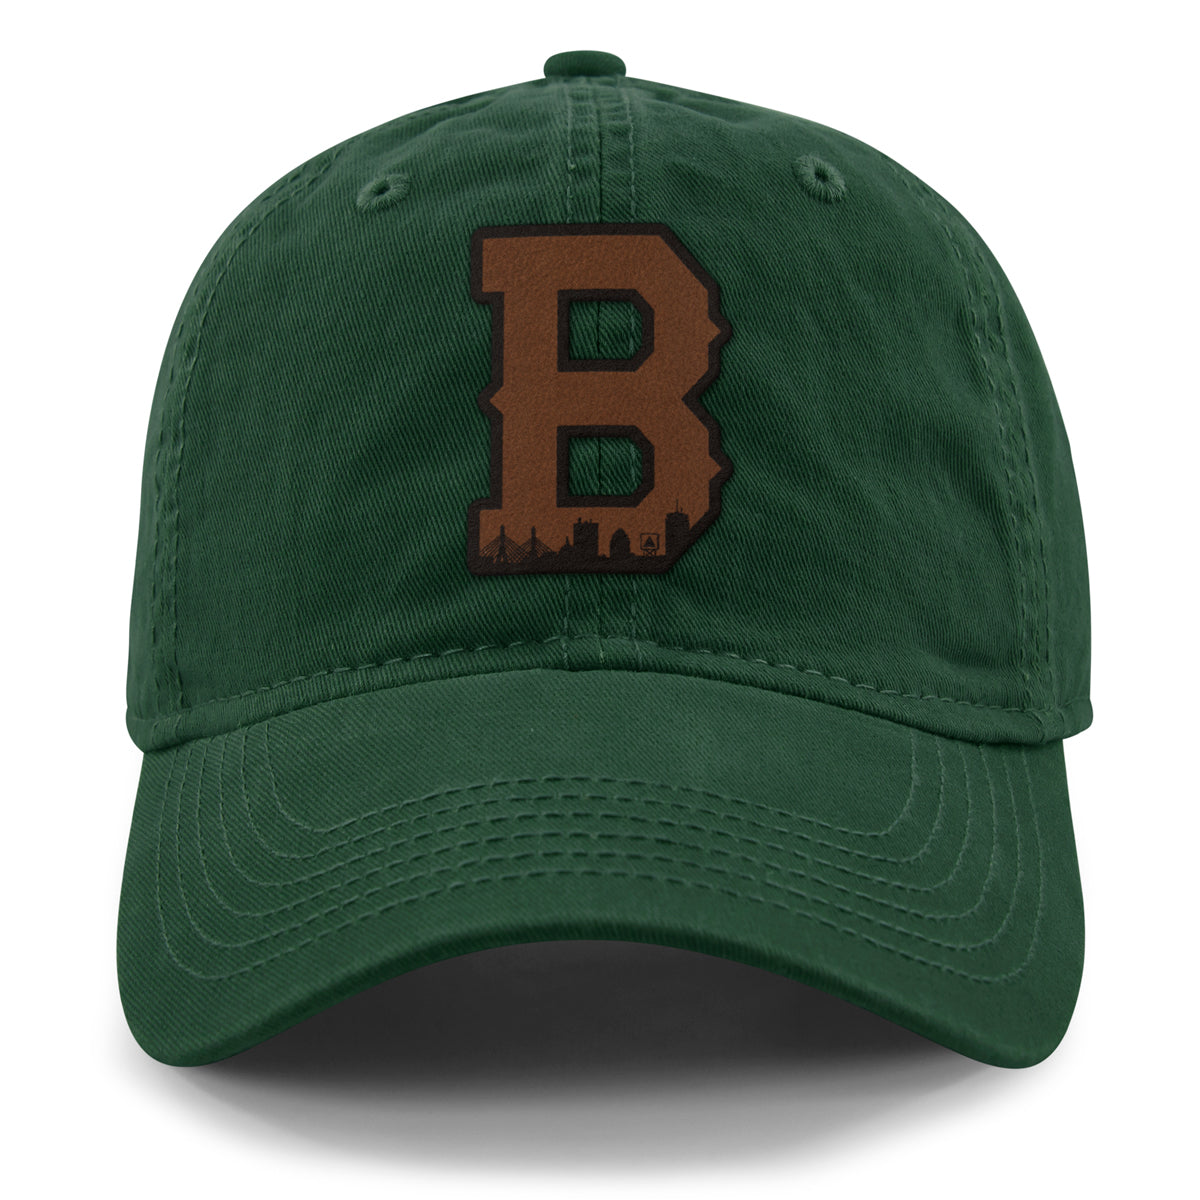 Boston B Skyline Leather Patch Dad Hat - Chowdaheadz